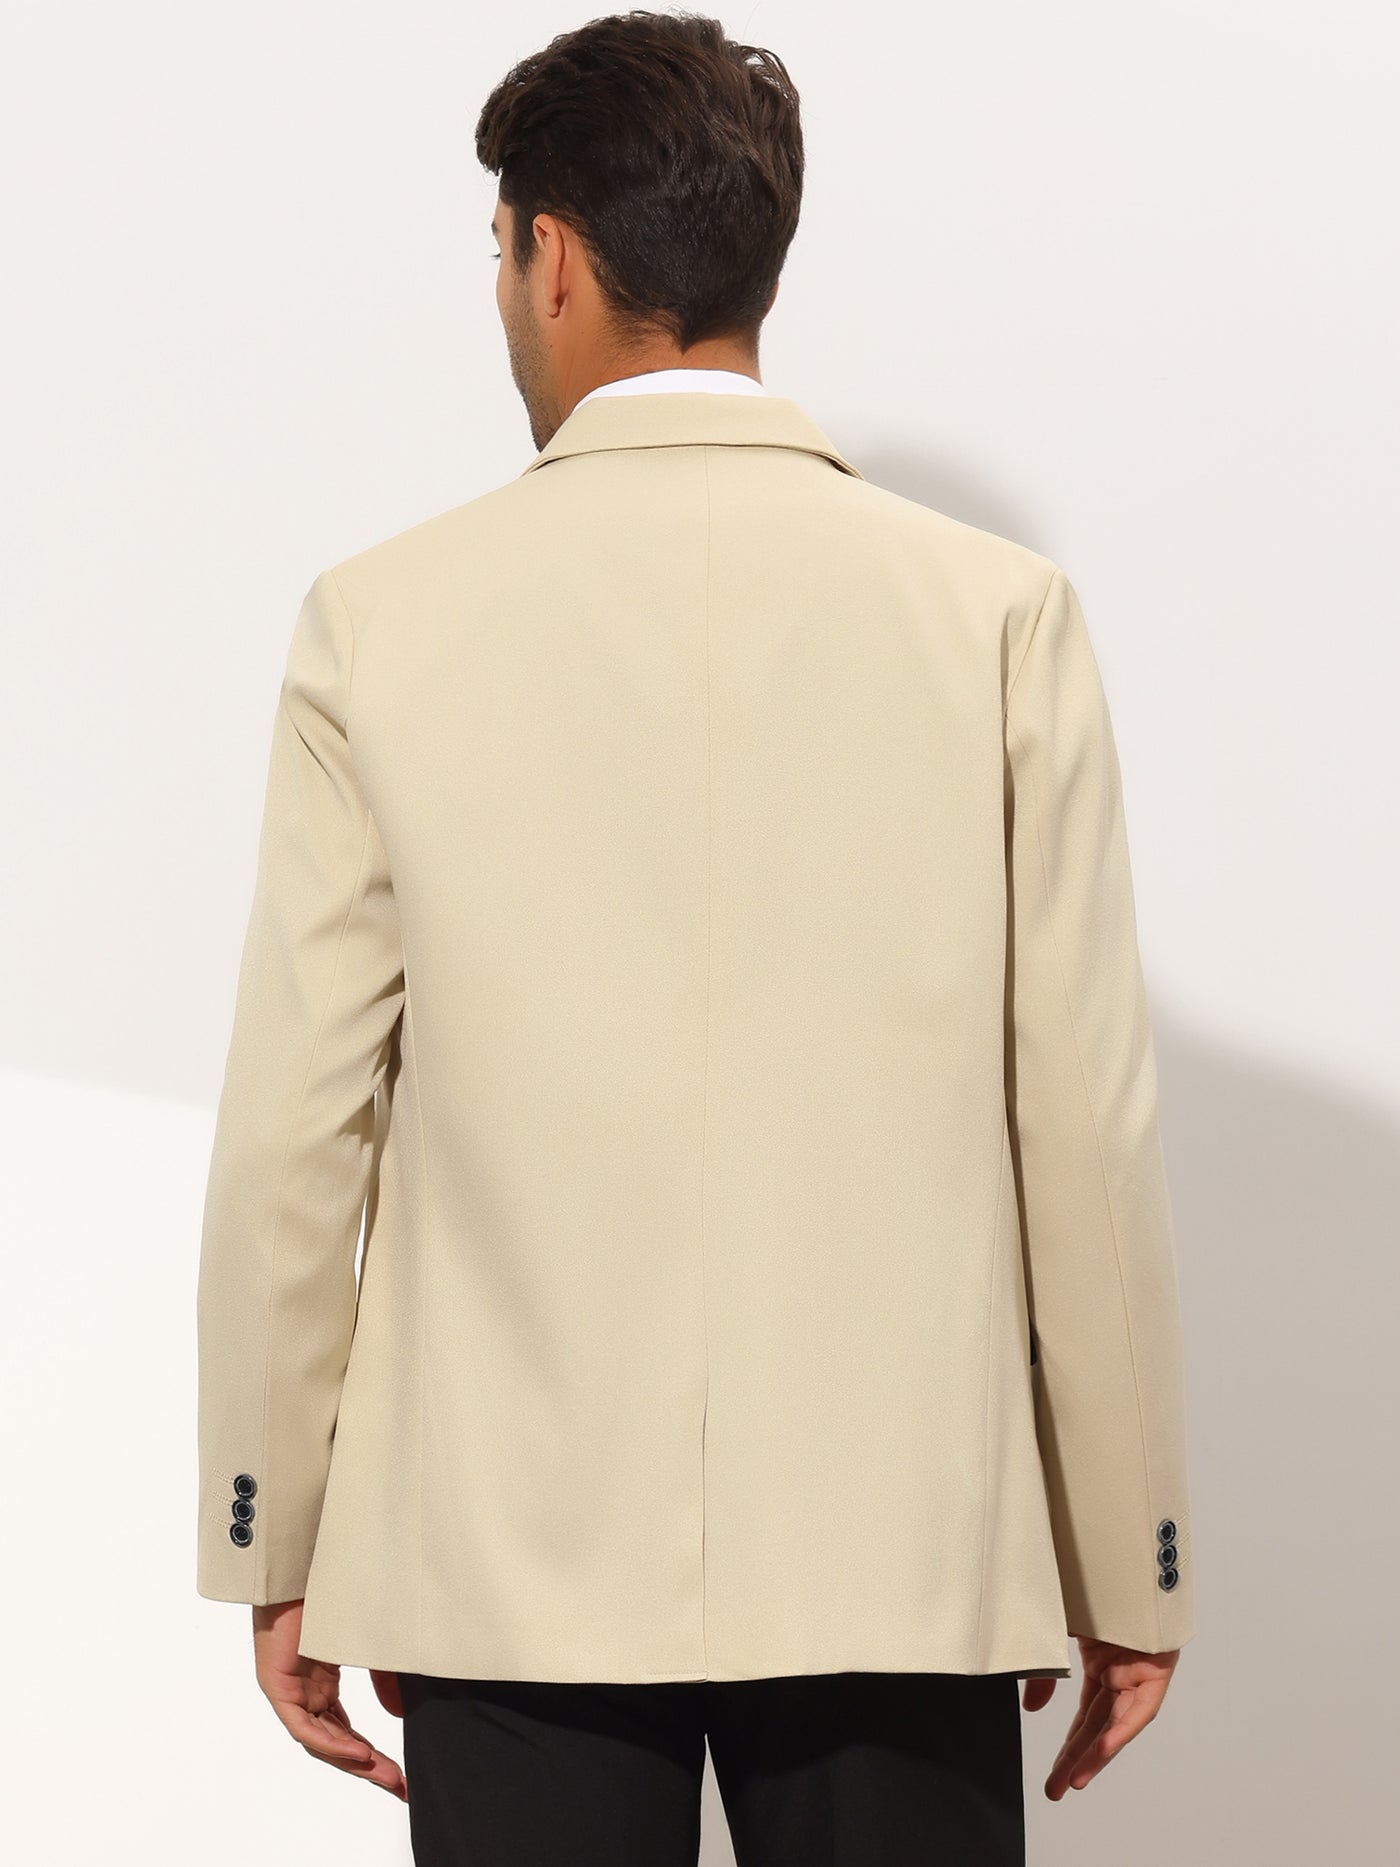 Bublédon Men's Slim Fit Solid Color Notch Lapel One Button Formal Blazer